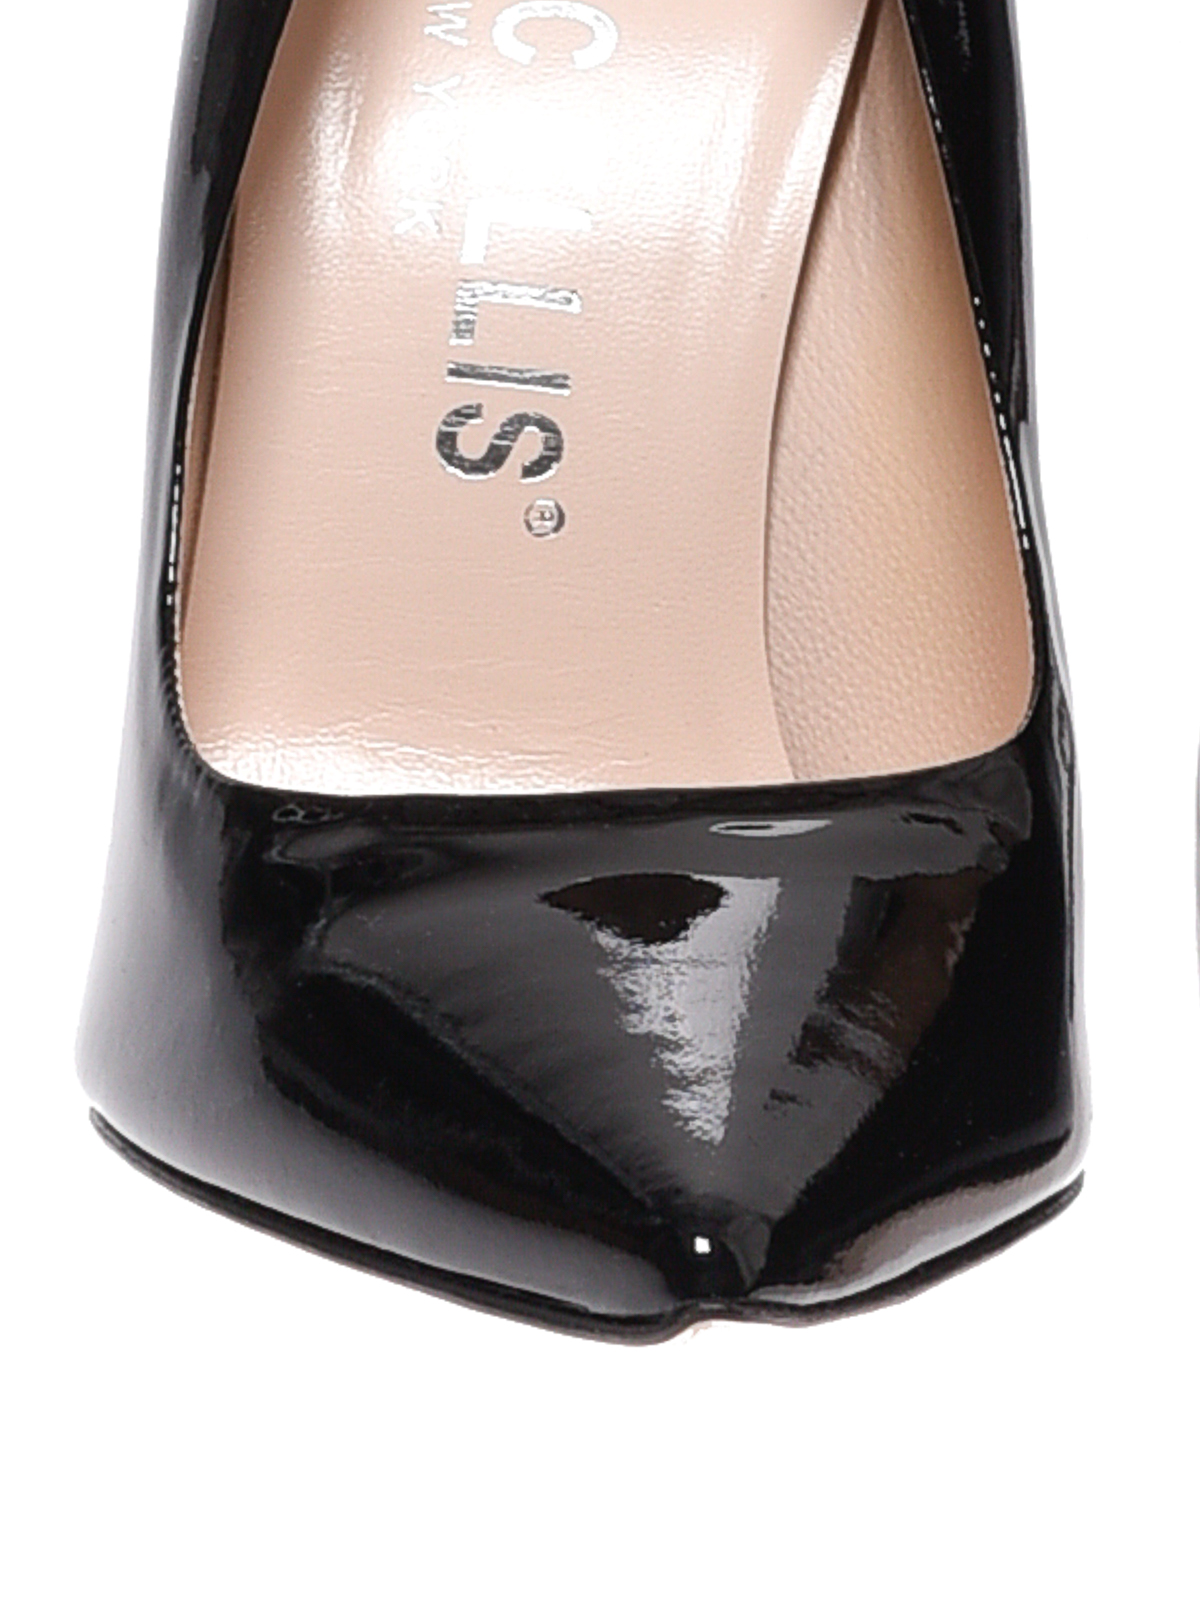 Court shoes Marc Ellis - Black Glass patent leather pumps - MA5001NERO